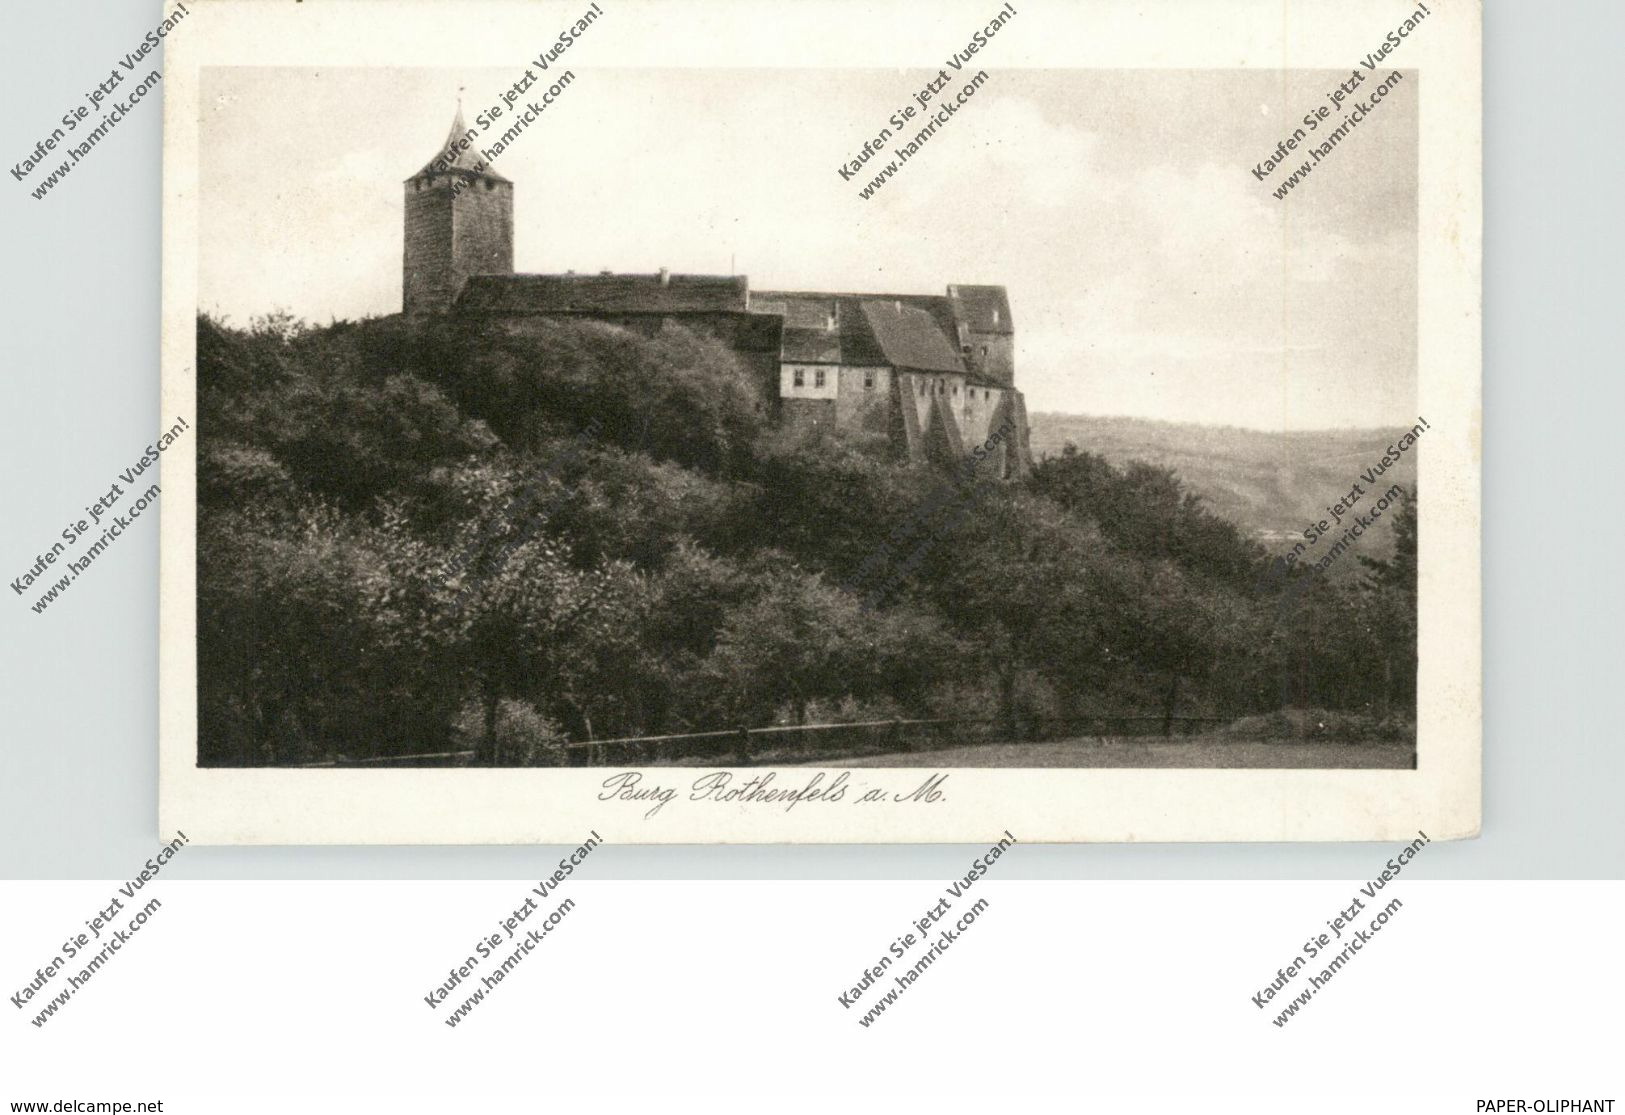 8774 ROTHENFELS, Burg, 192... - Karlstadt